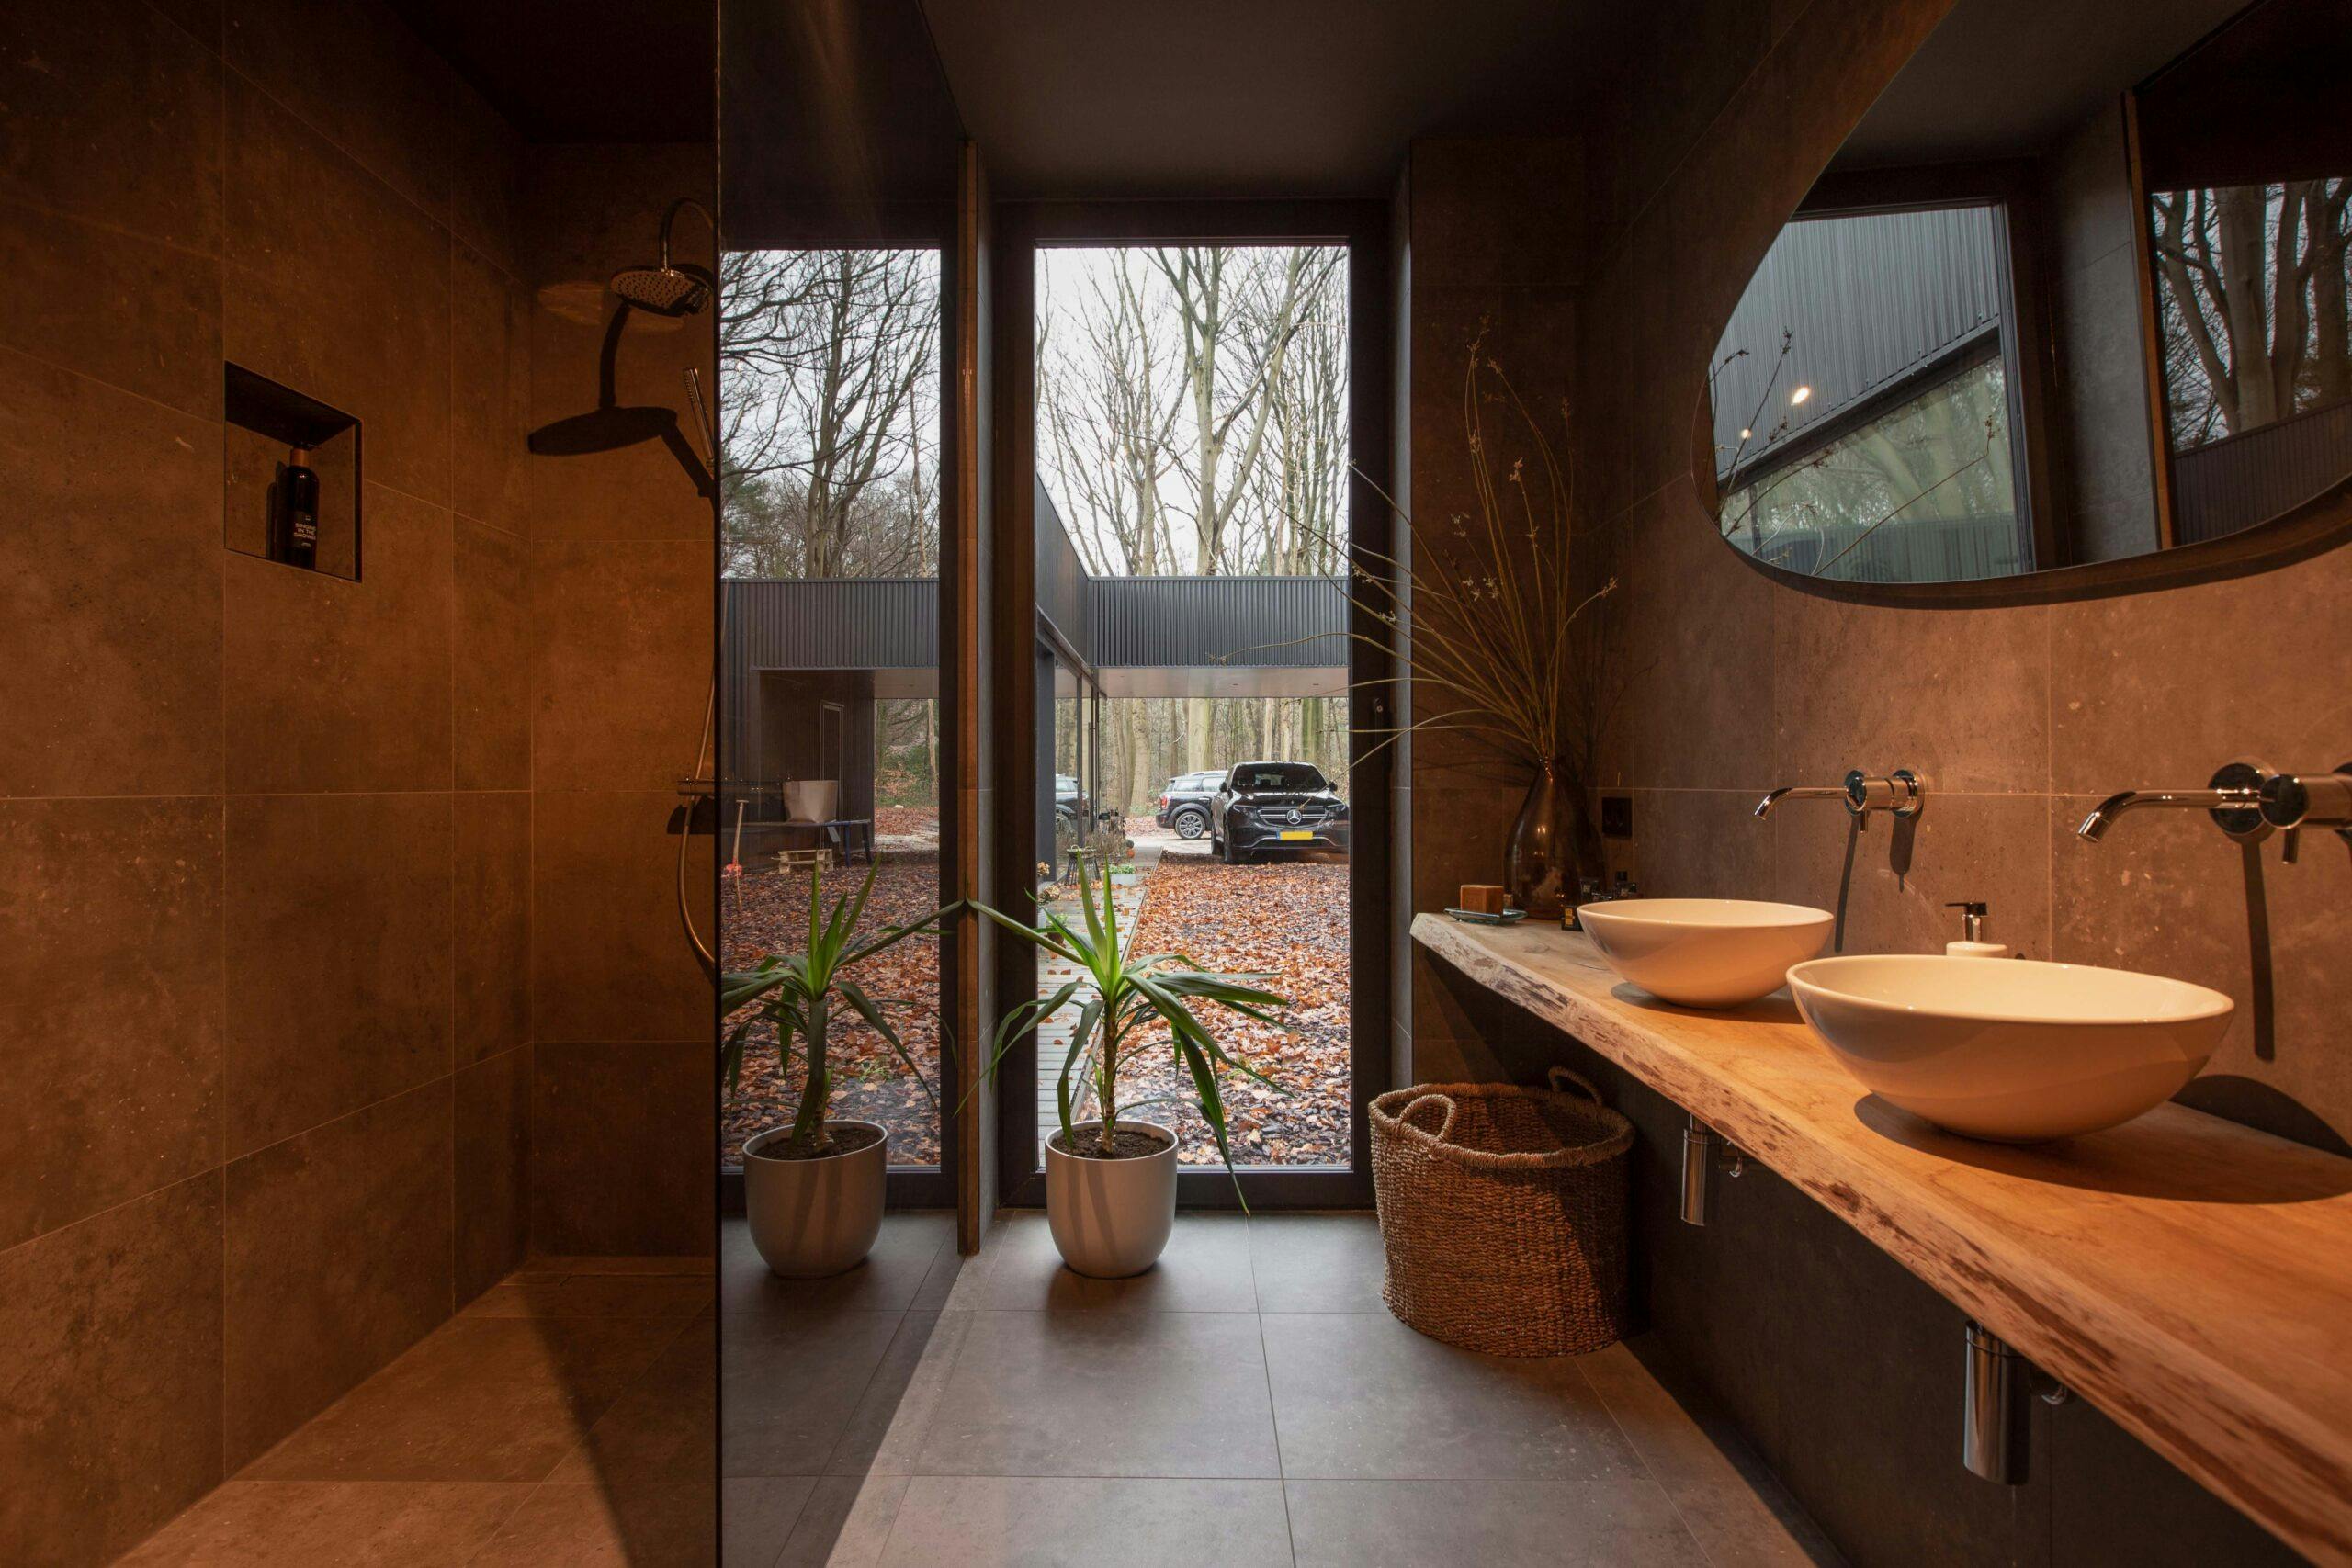 Een voorbeeld van een luxe badkamer met inloopdouche.